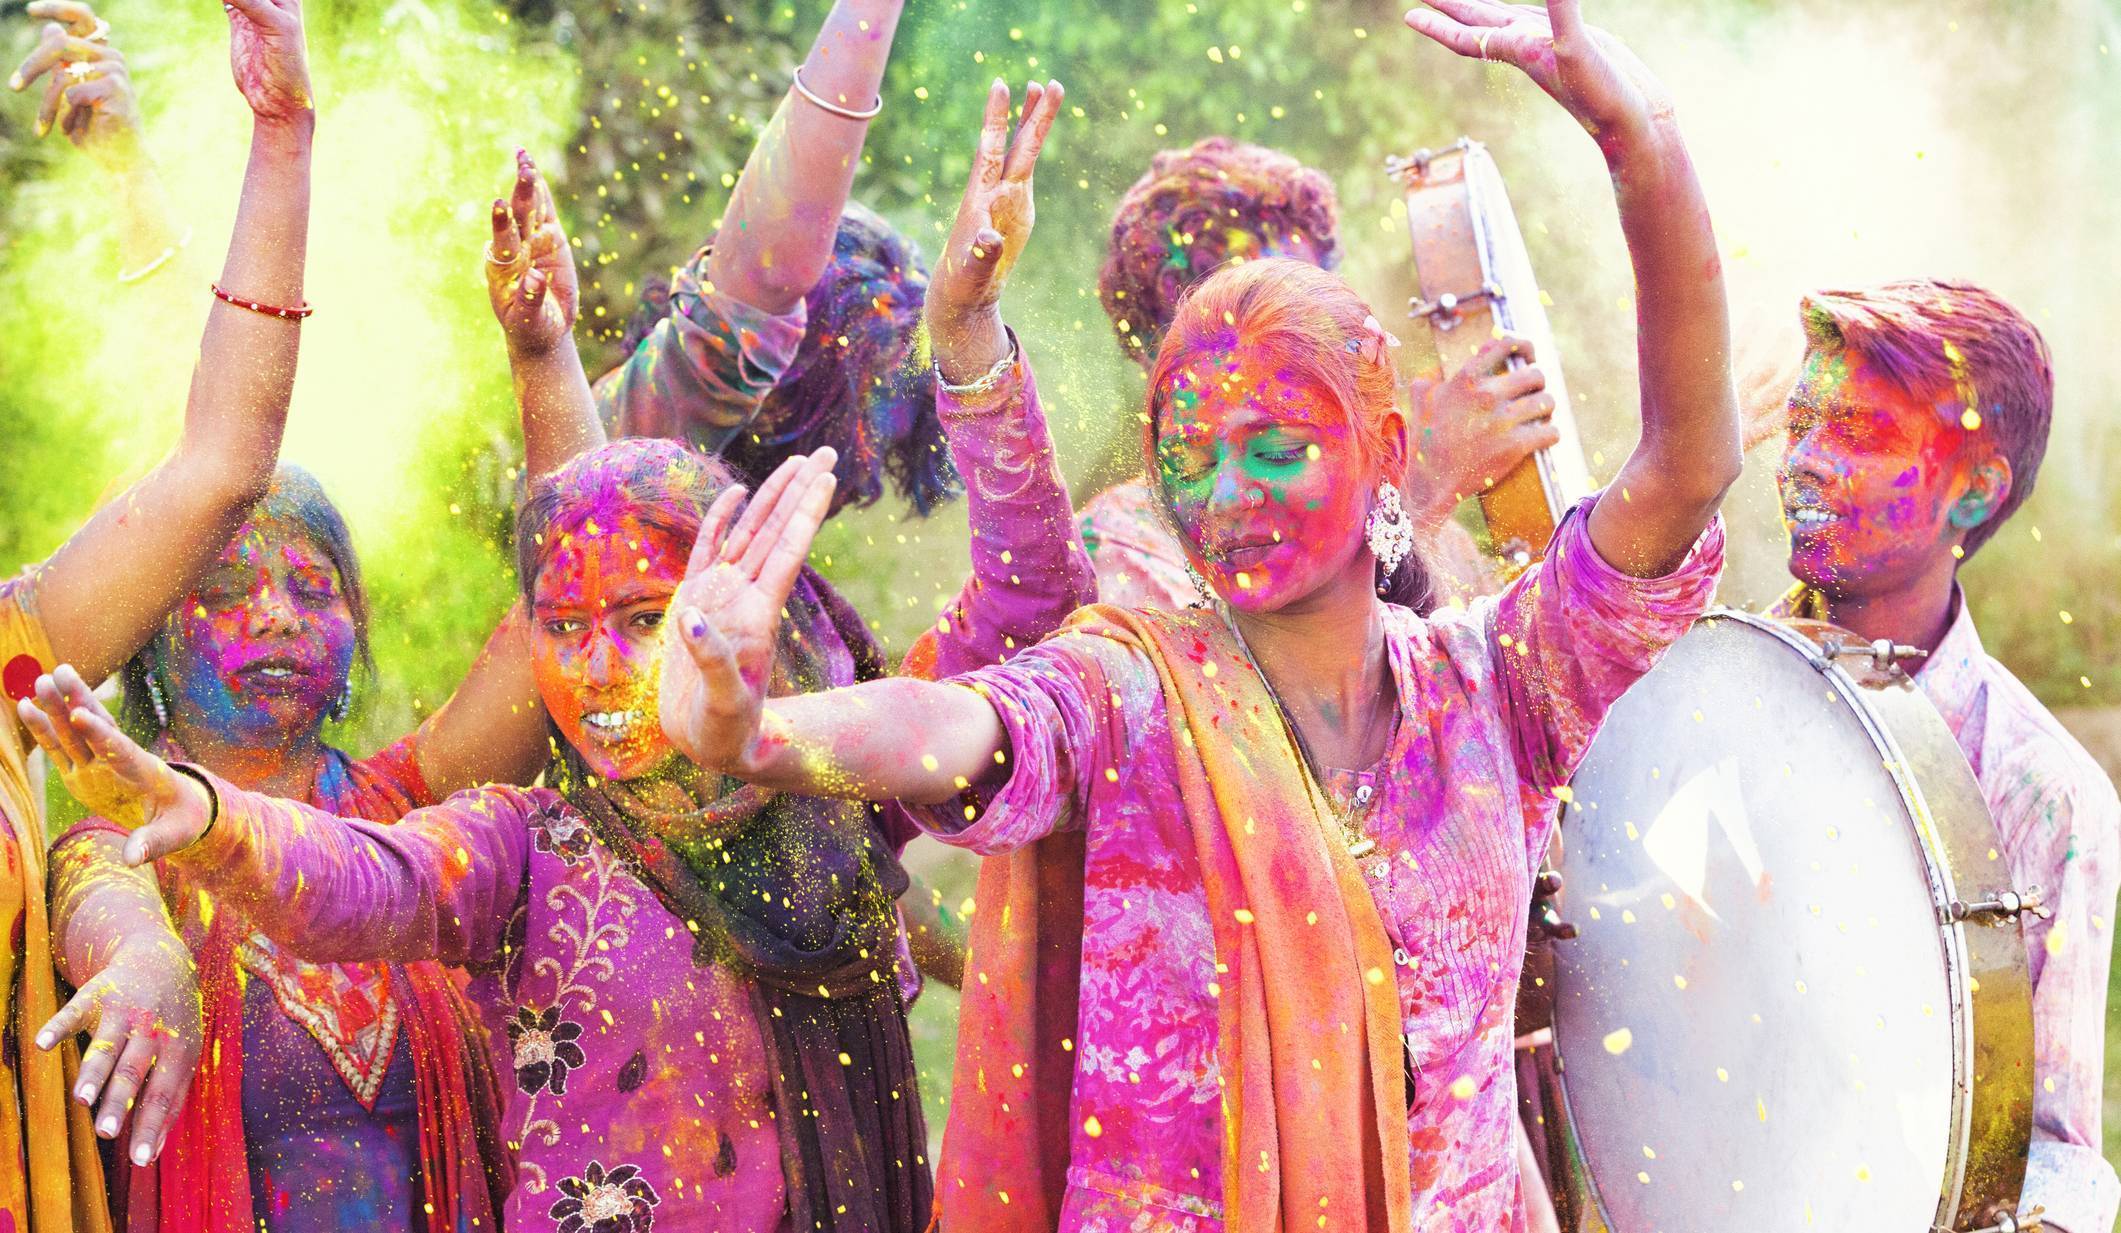 Чем интересен фестиваль красок холи в индии - туристический блог бизнес визит